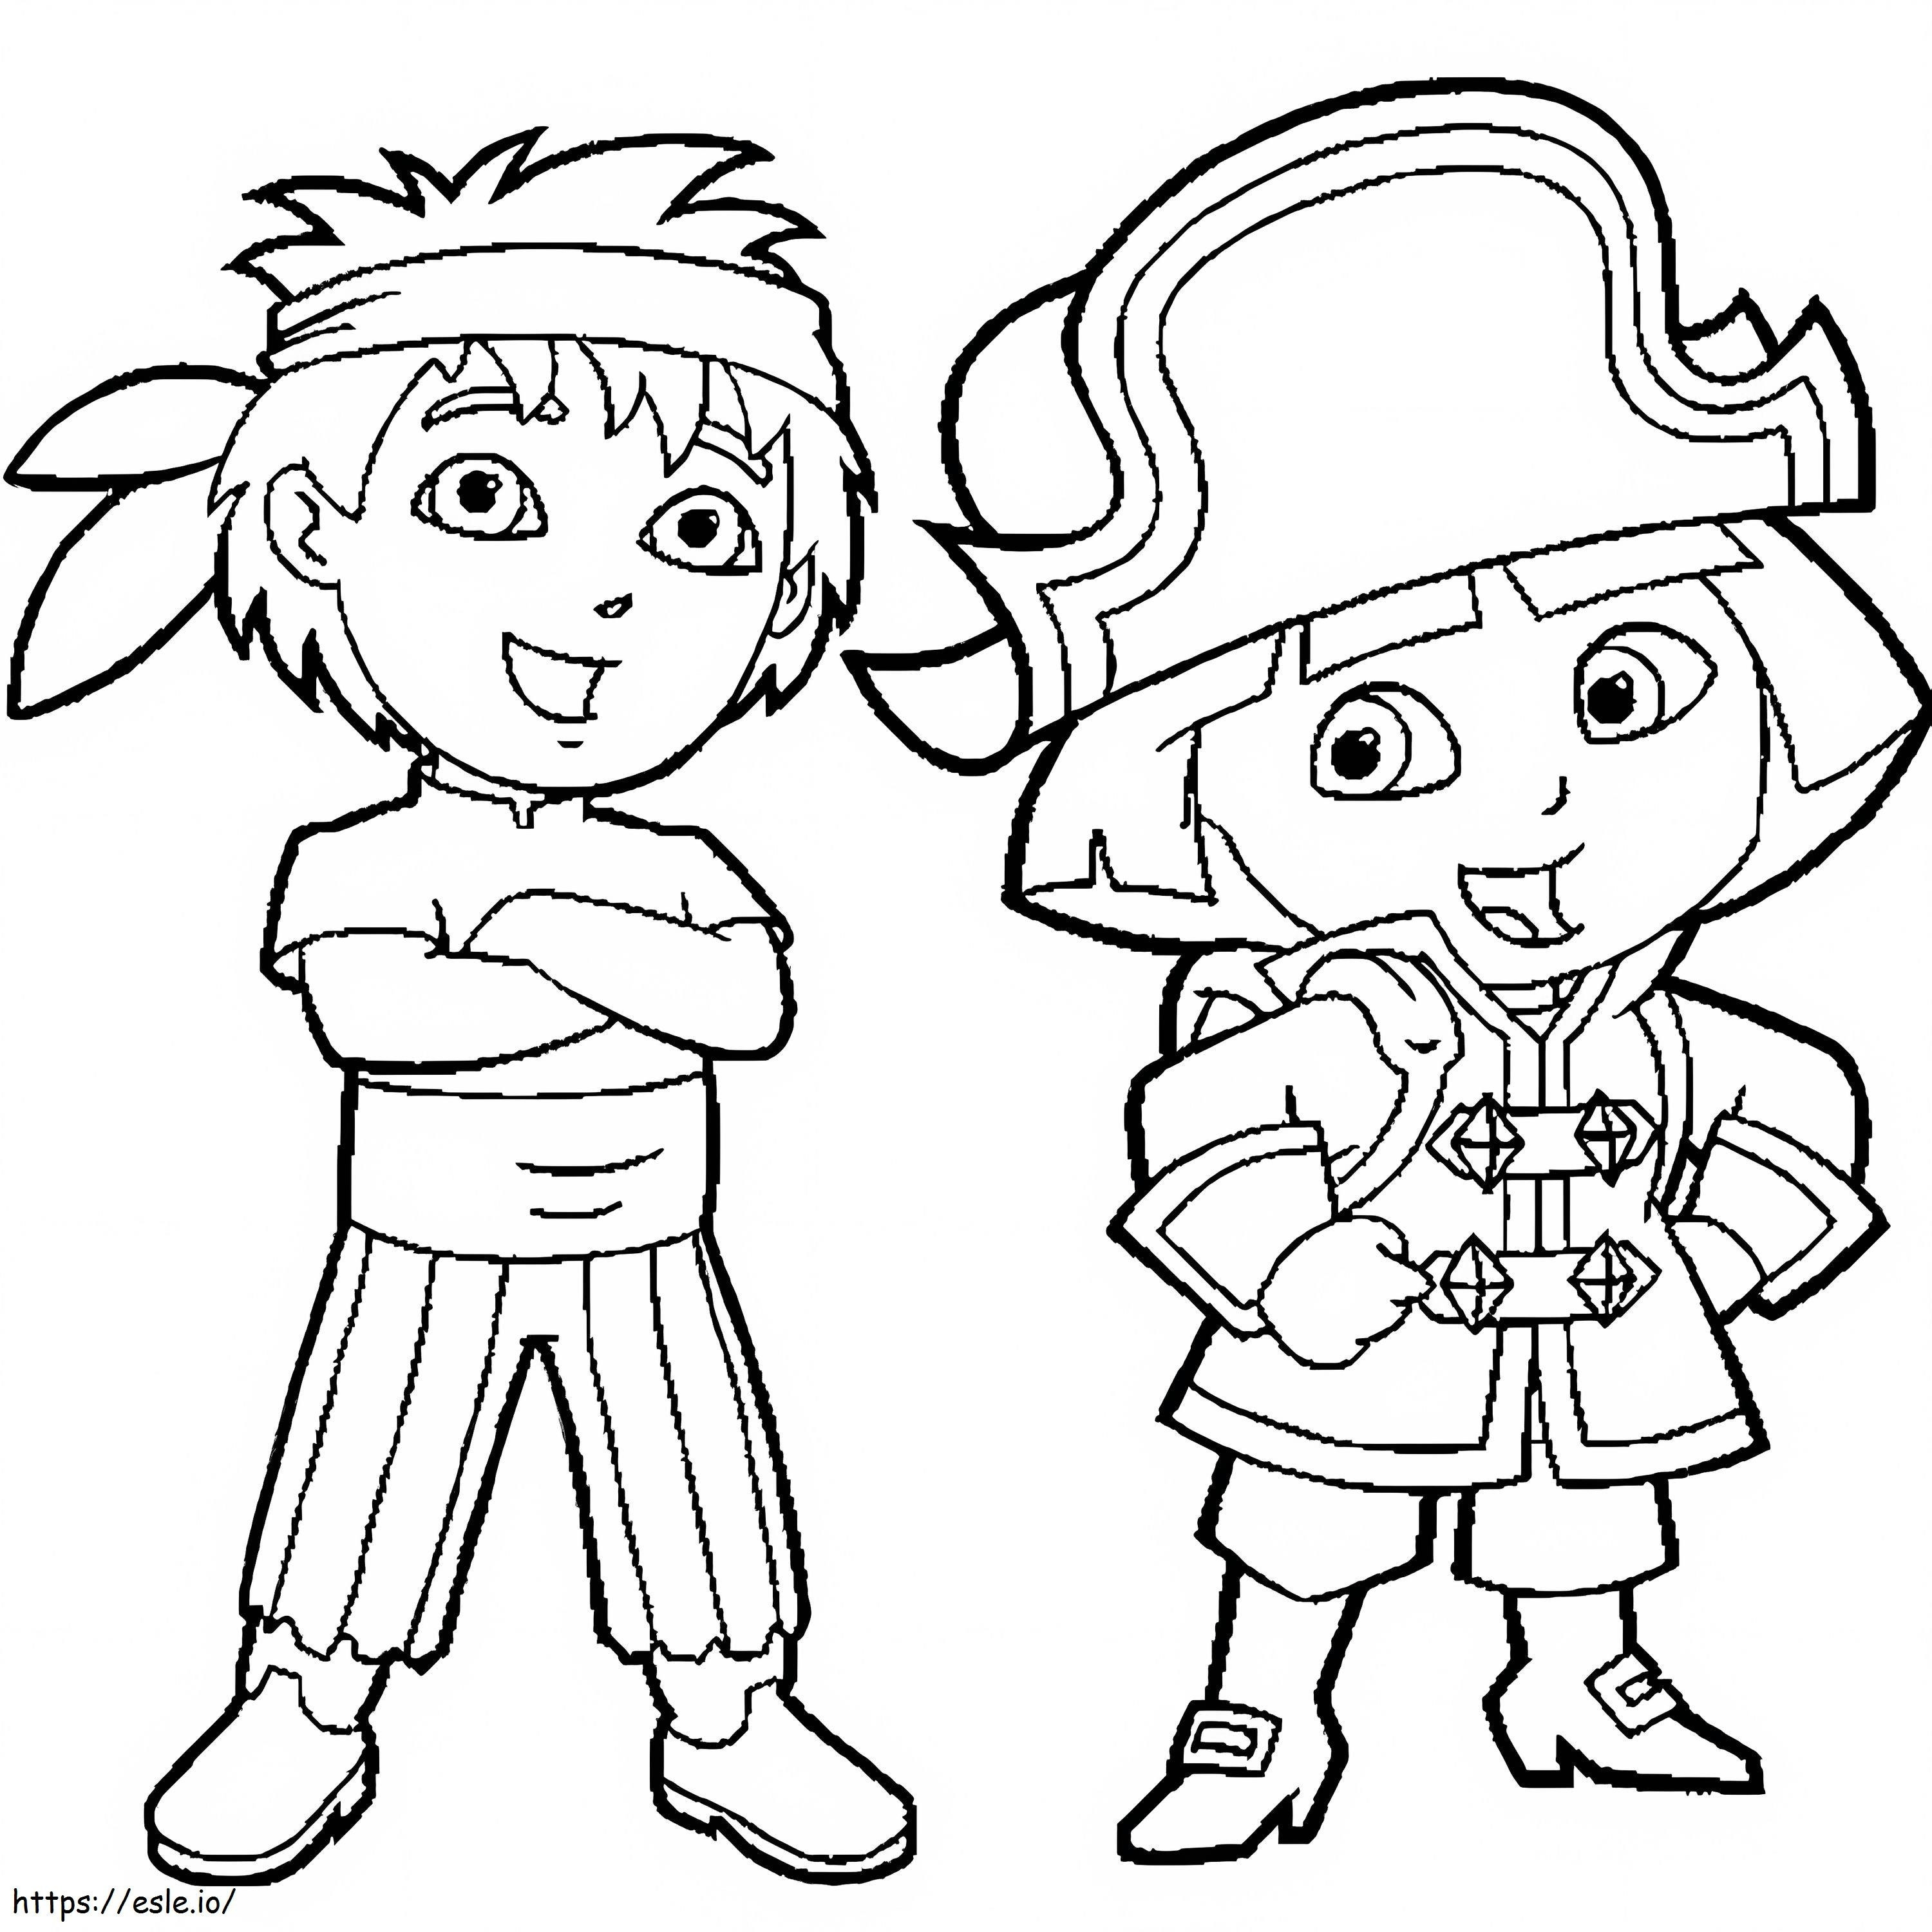 Diego und Dora Pirate ausmalbilder